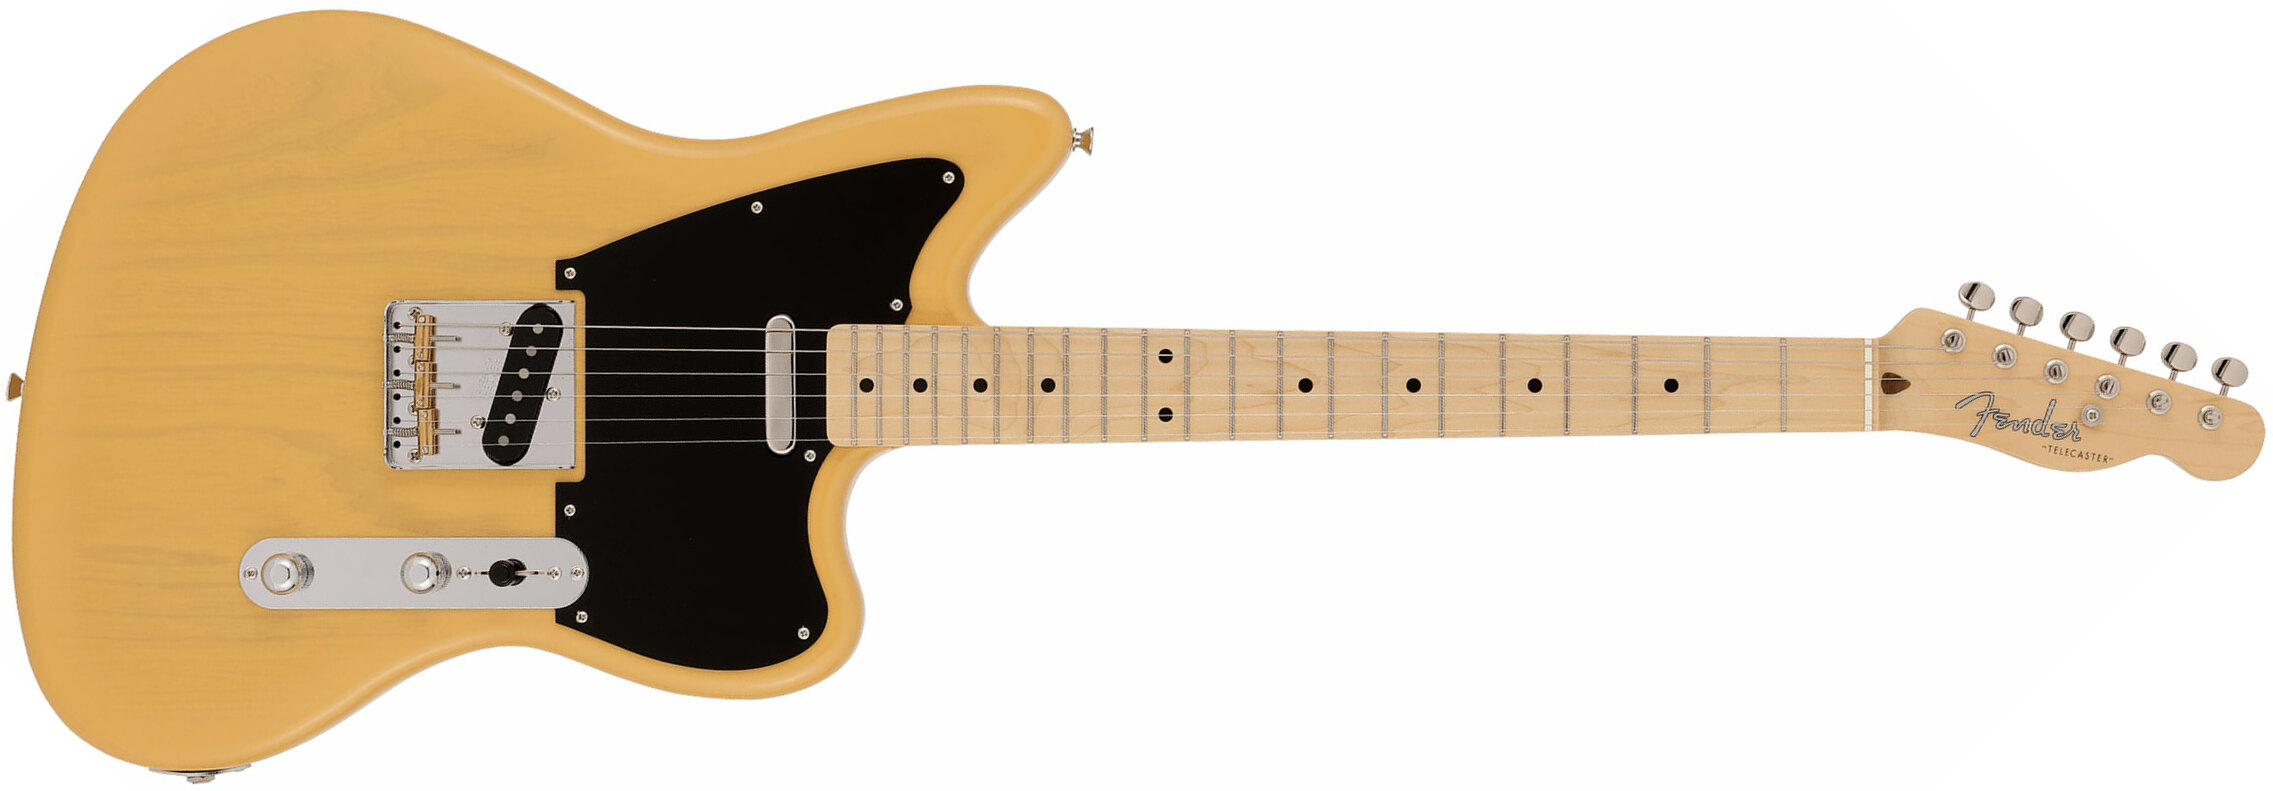 Fender Tele Offset Ltd Jap 2s Ht Mn - Butterscotch Blonde - Retro-Rock-E-Gitarre - Main picture